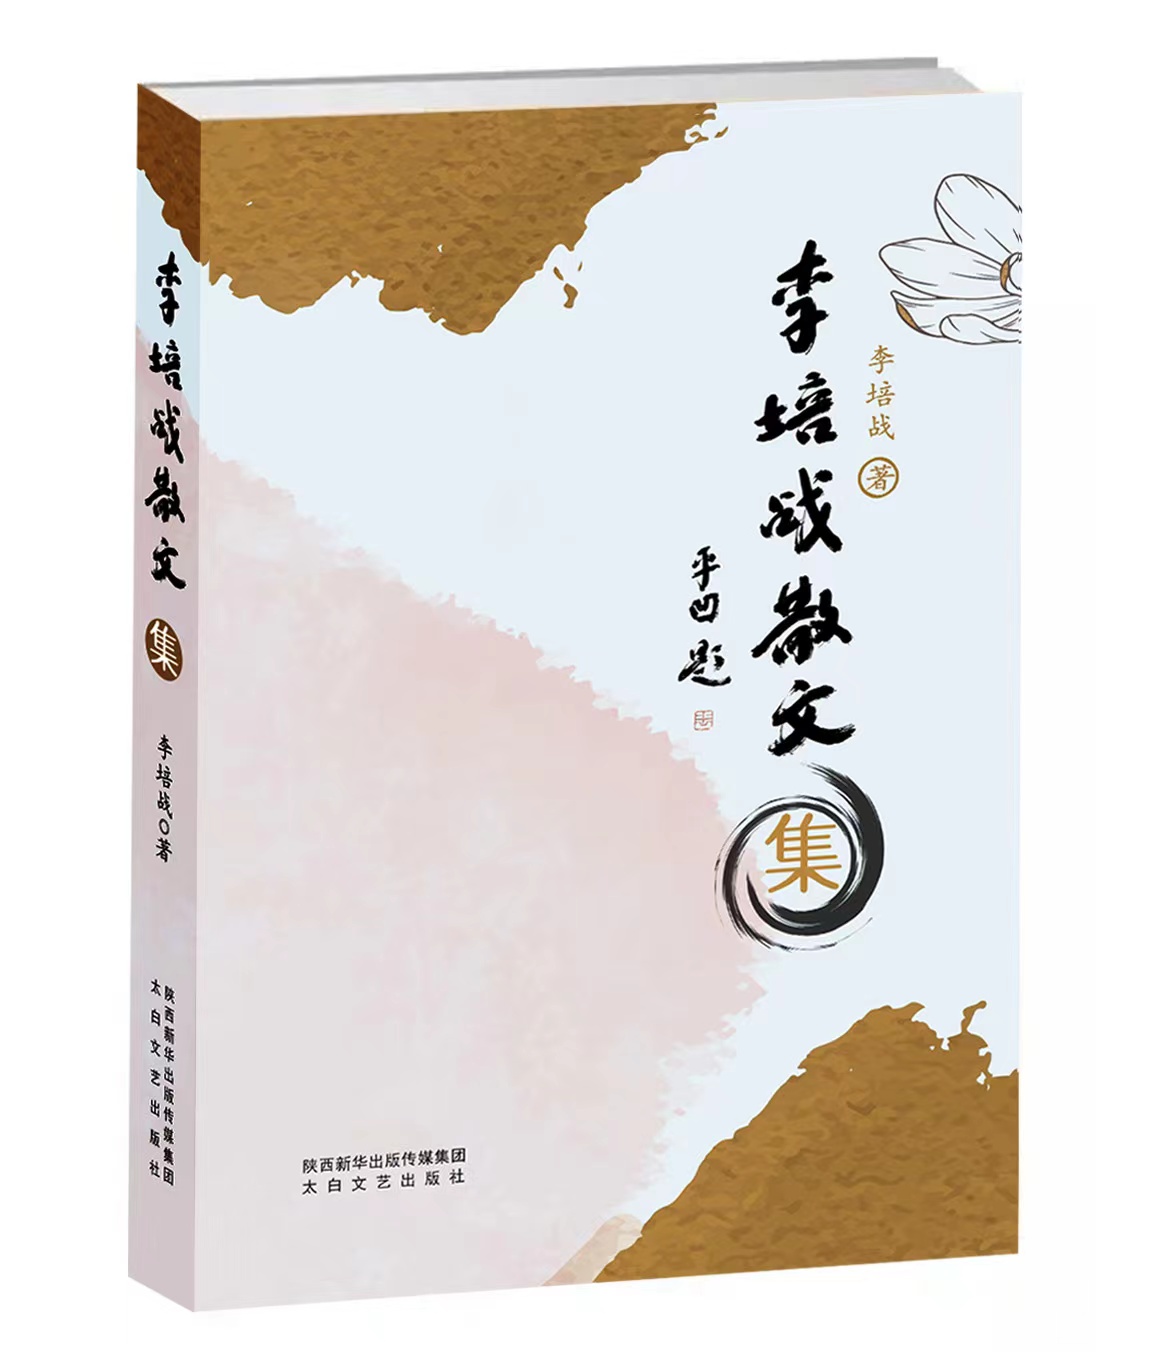 《李培战散文集》由太白文艺出版社公开出版发行